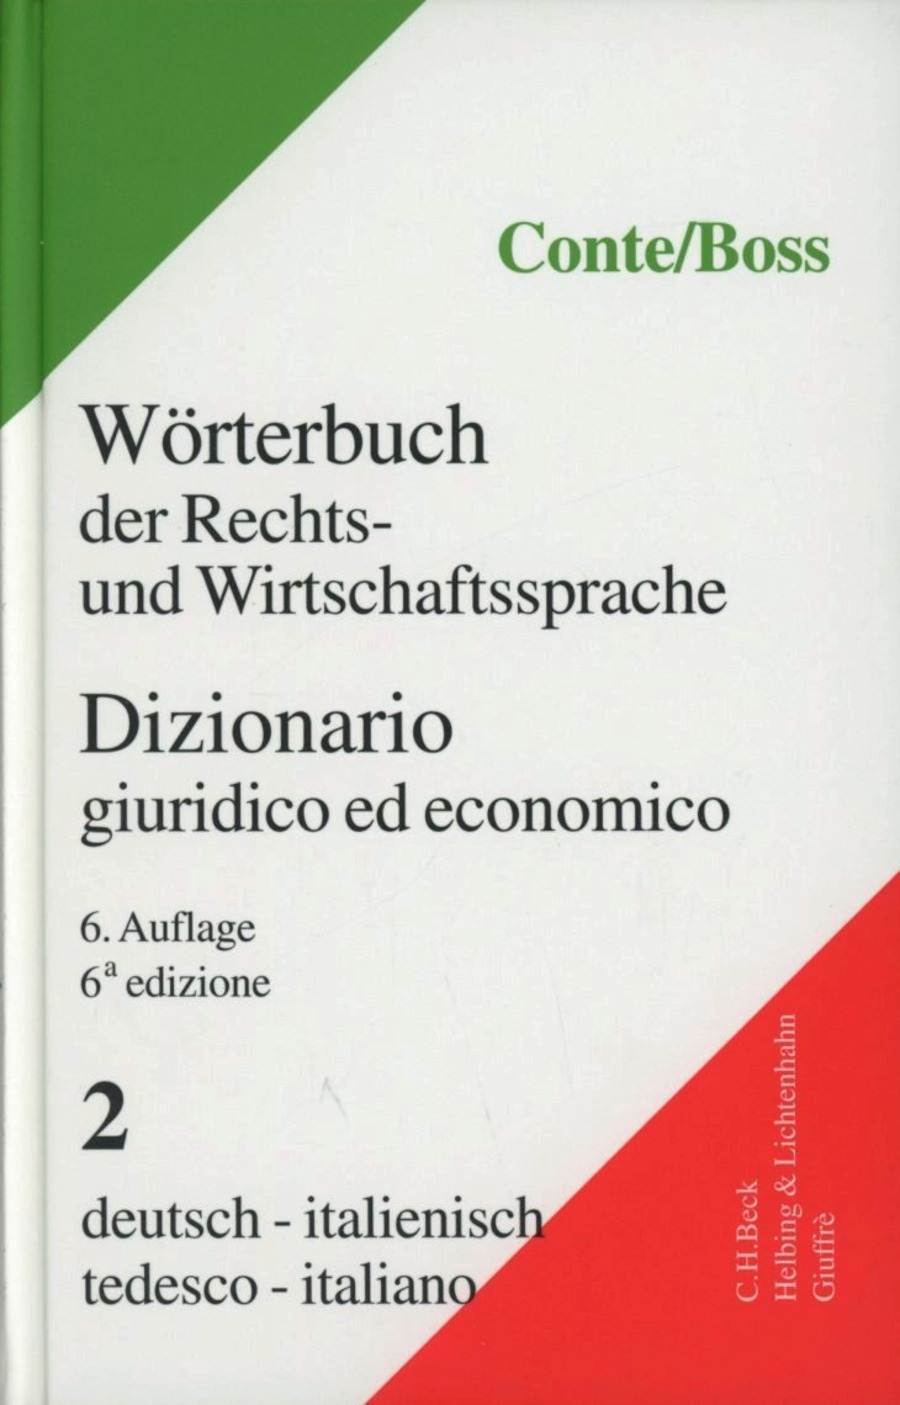 Dizionario giuridico ed economico-Worterbuch der Rechts-und Wirtschaftssprache